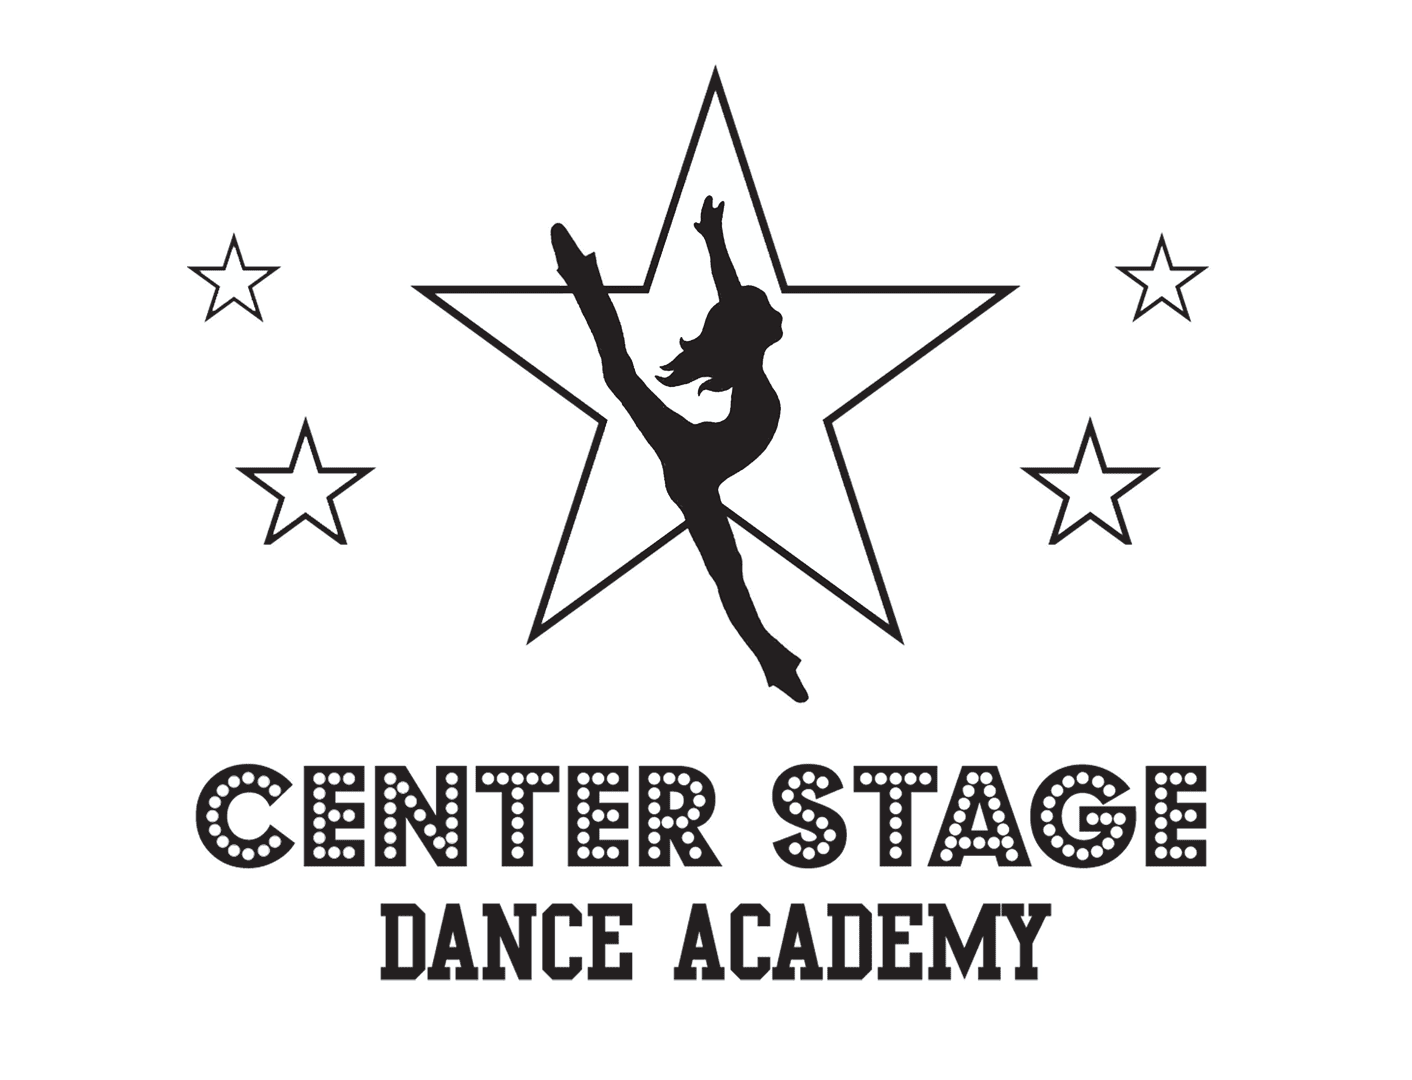 En Stage Dance Academy